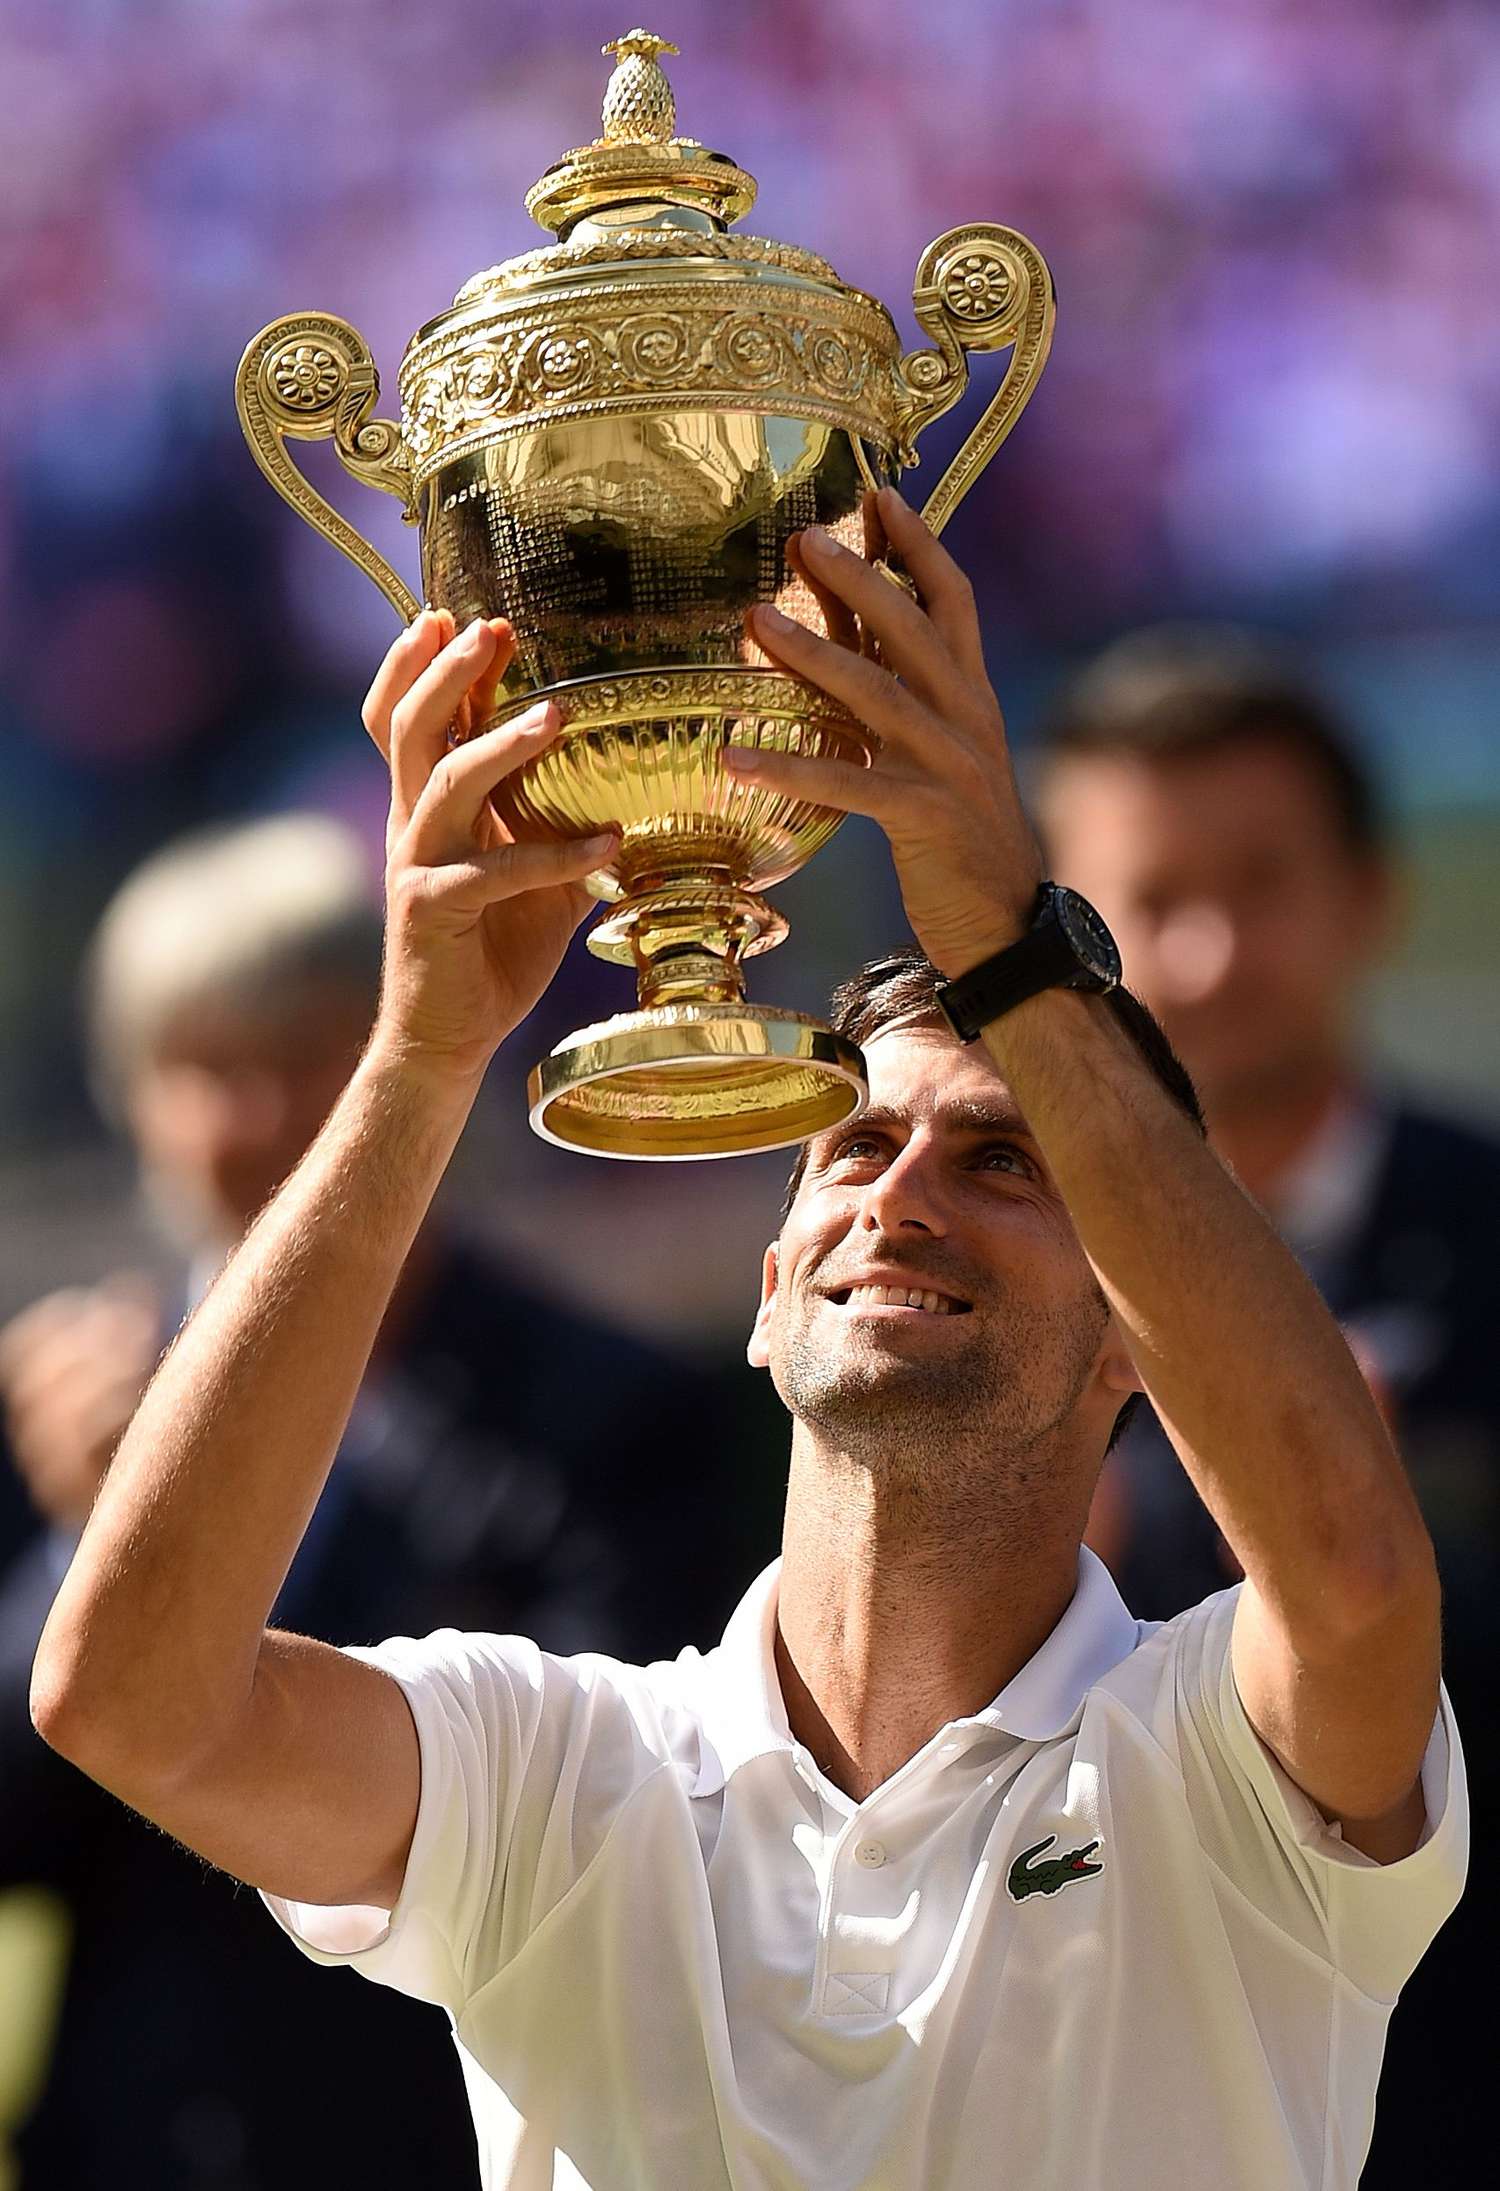 En Londres, Djokovic arrasó en la final y tuvo su reencuentro con la gloria